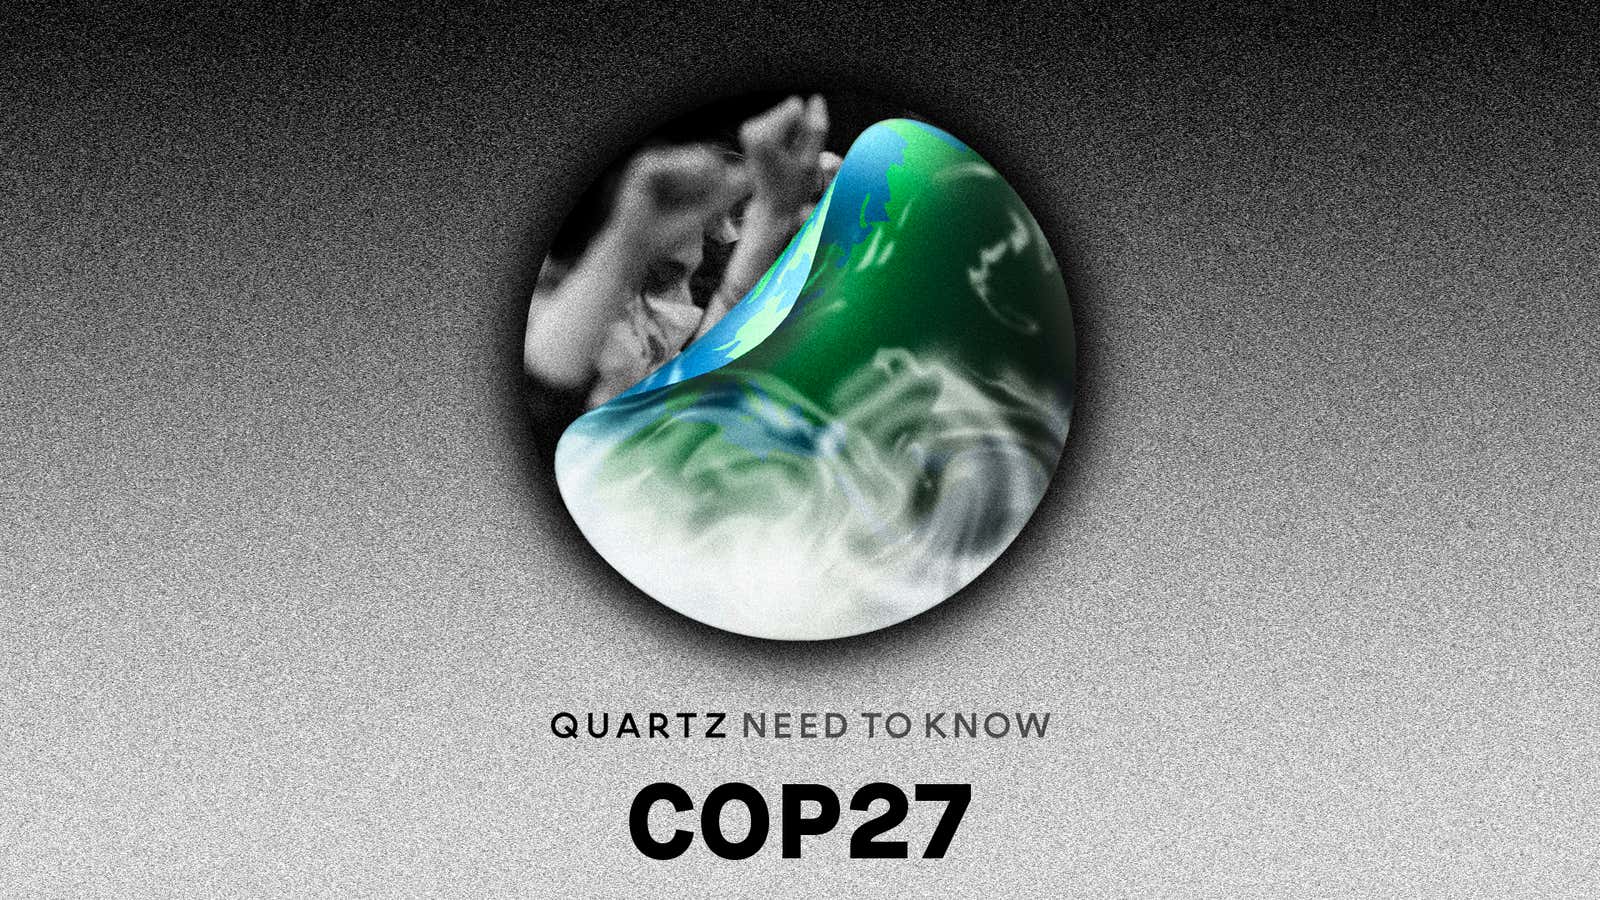 COP27: The $100 billion question